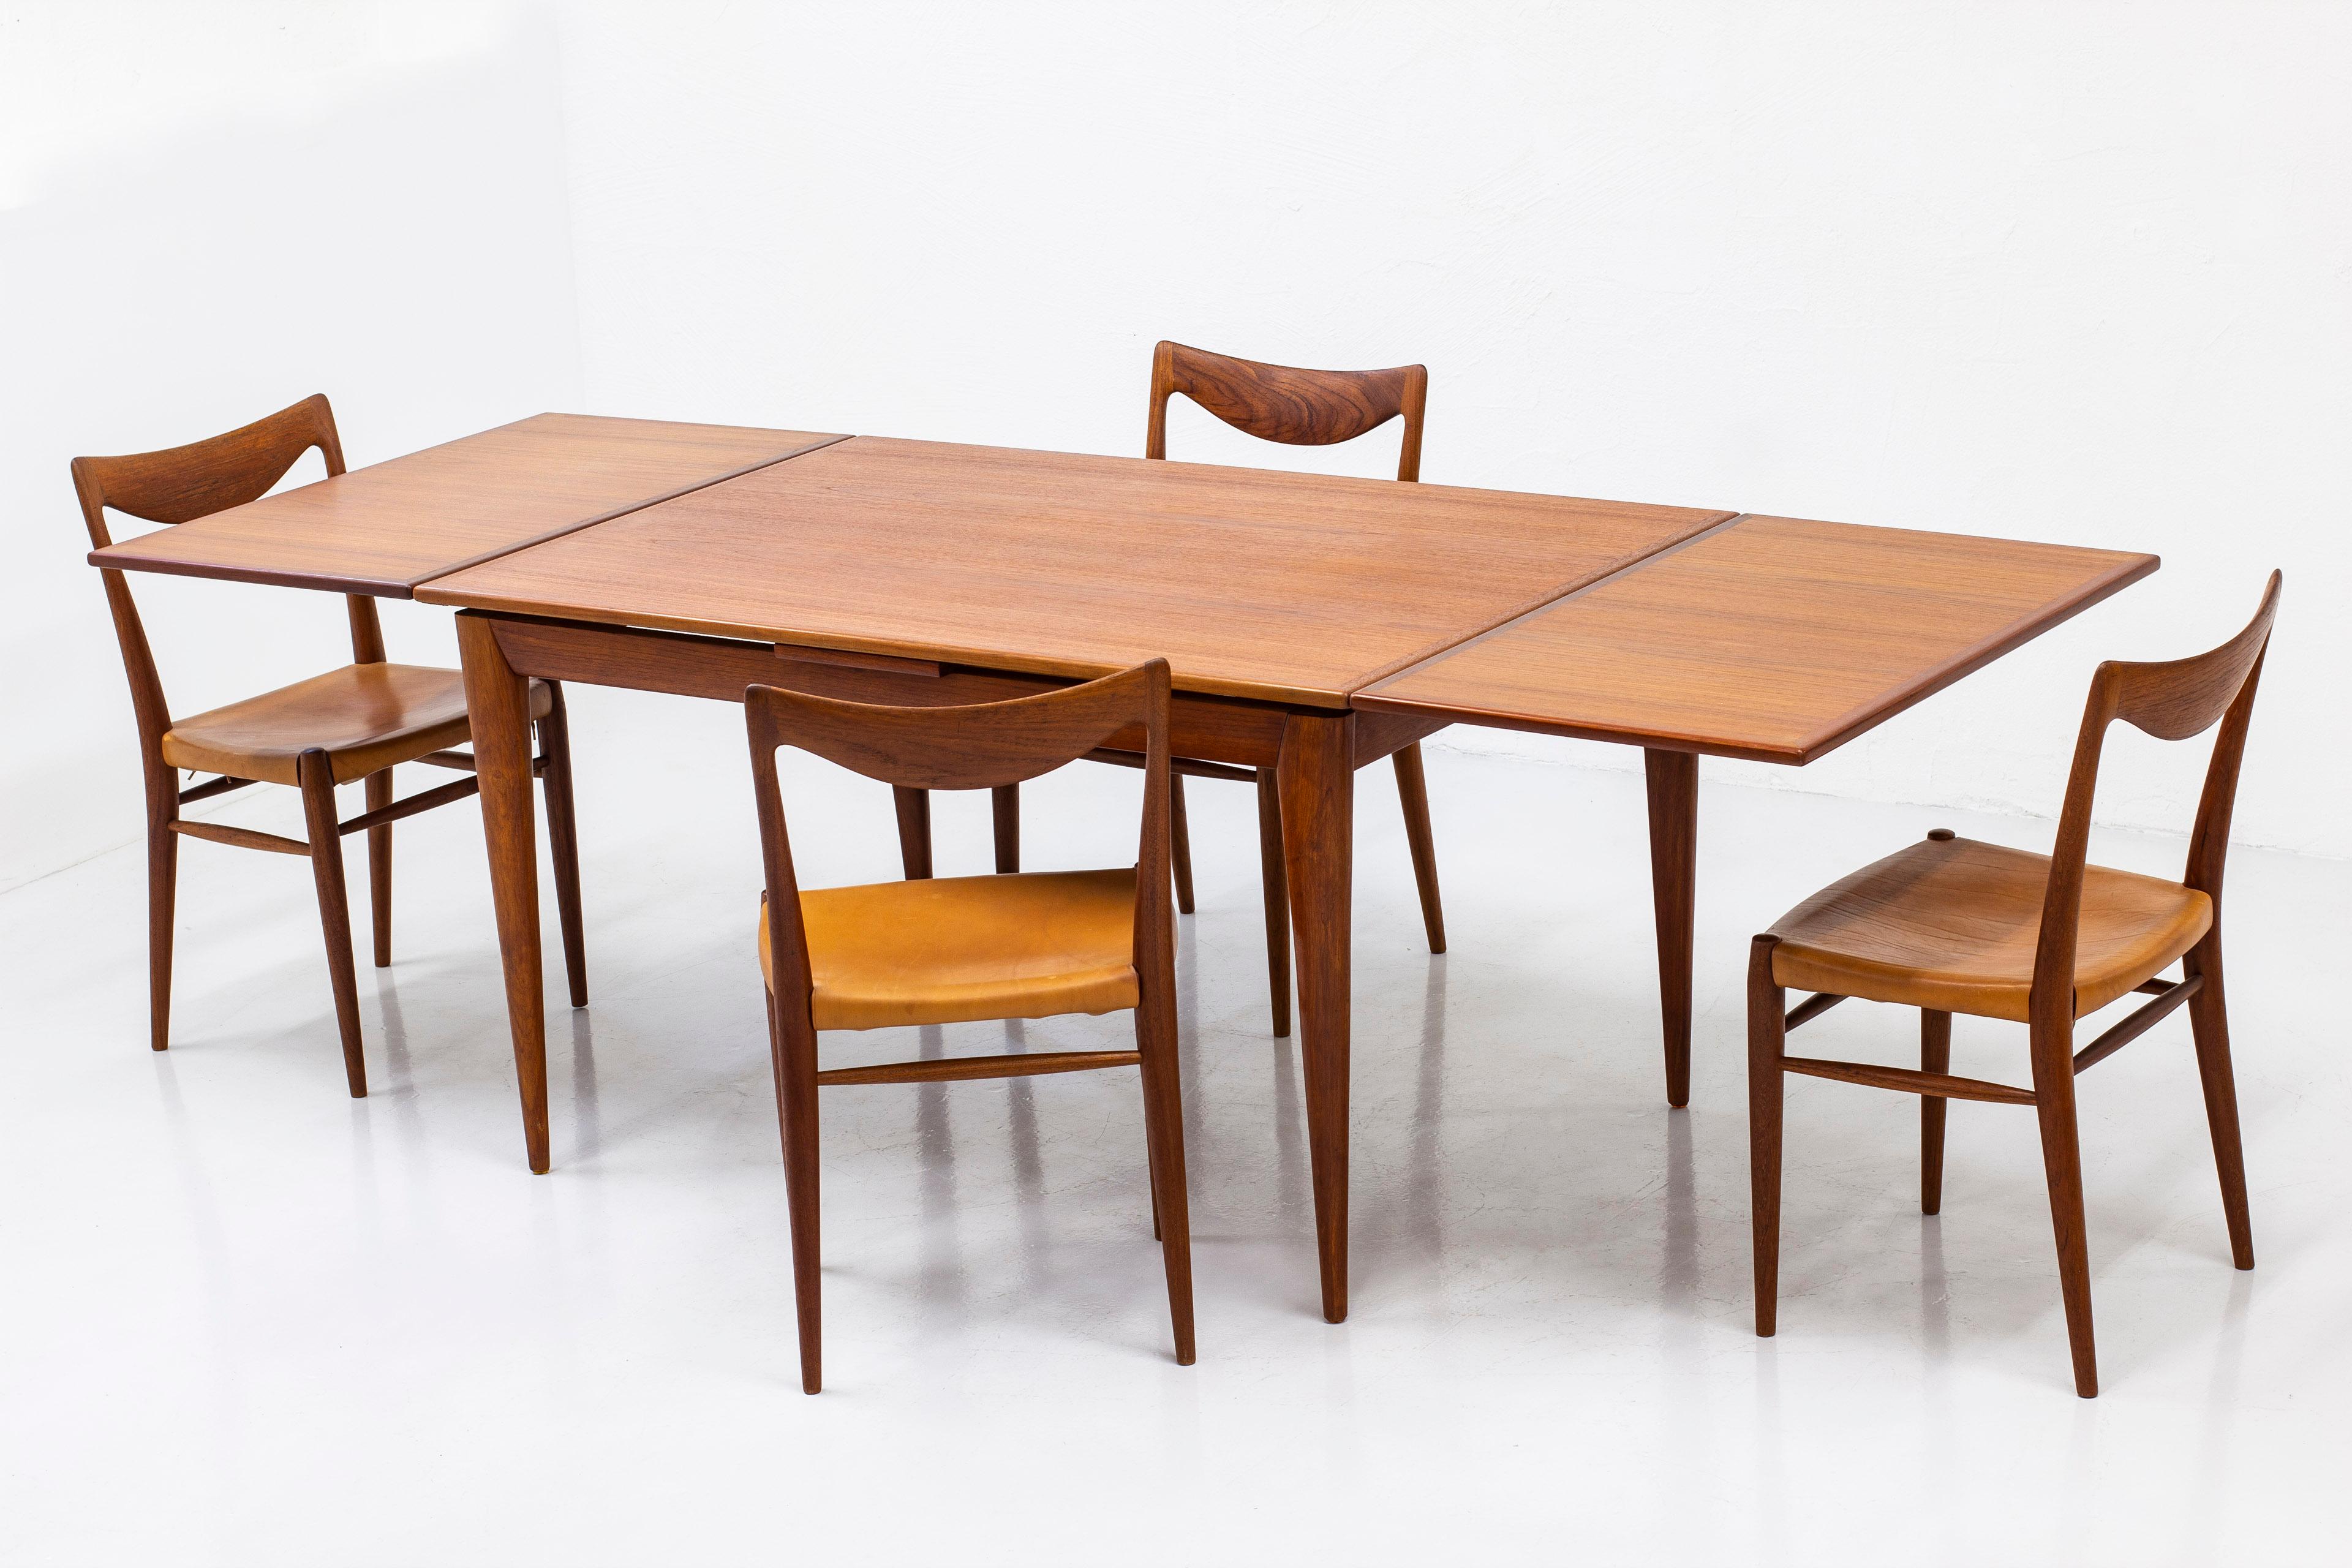 Mid-20th Century Extendable Dining Table in Teak by Niels Møller Fro J. L. Møller, Denmark, 1950s For Sale